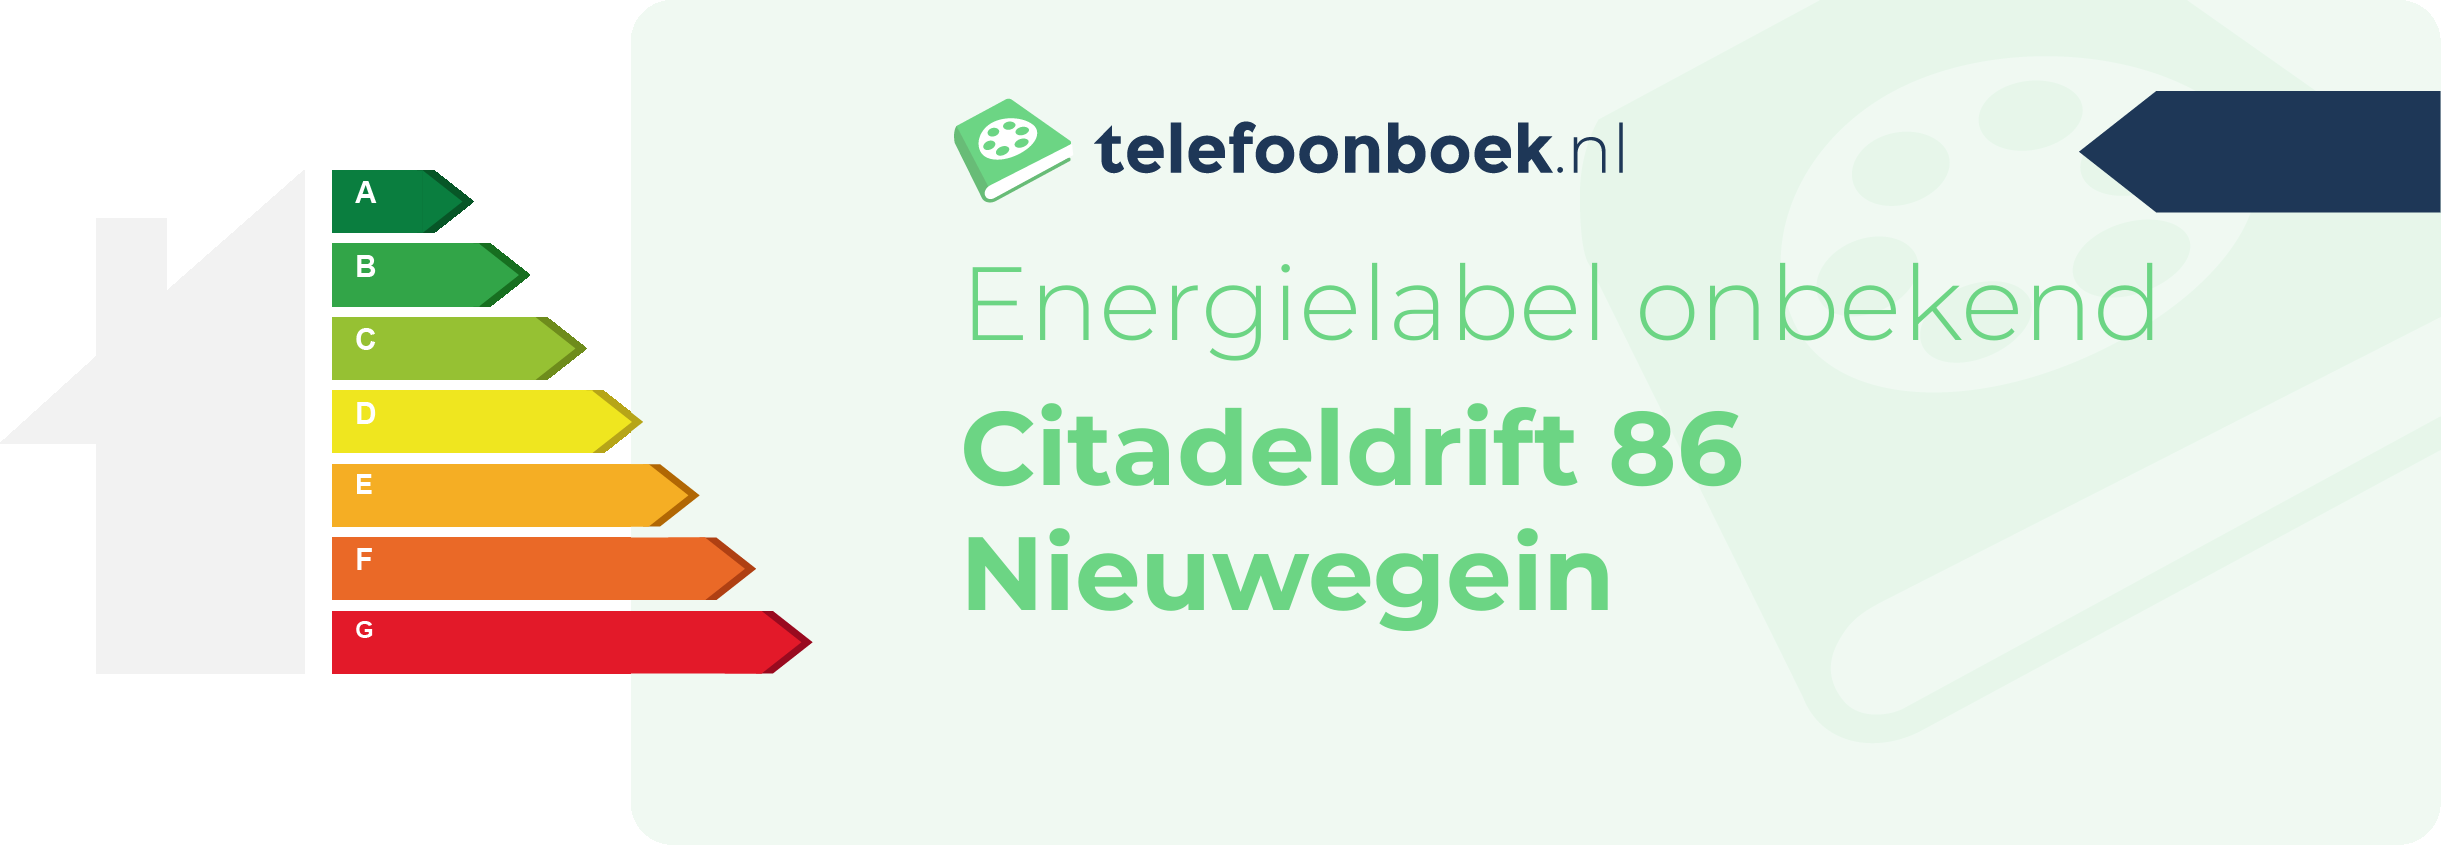 Energielabel Citadeldrift 86 Nieuwegein